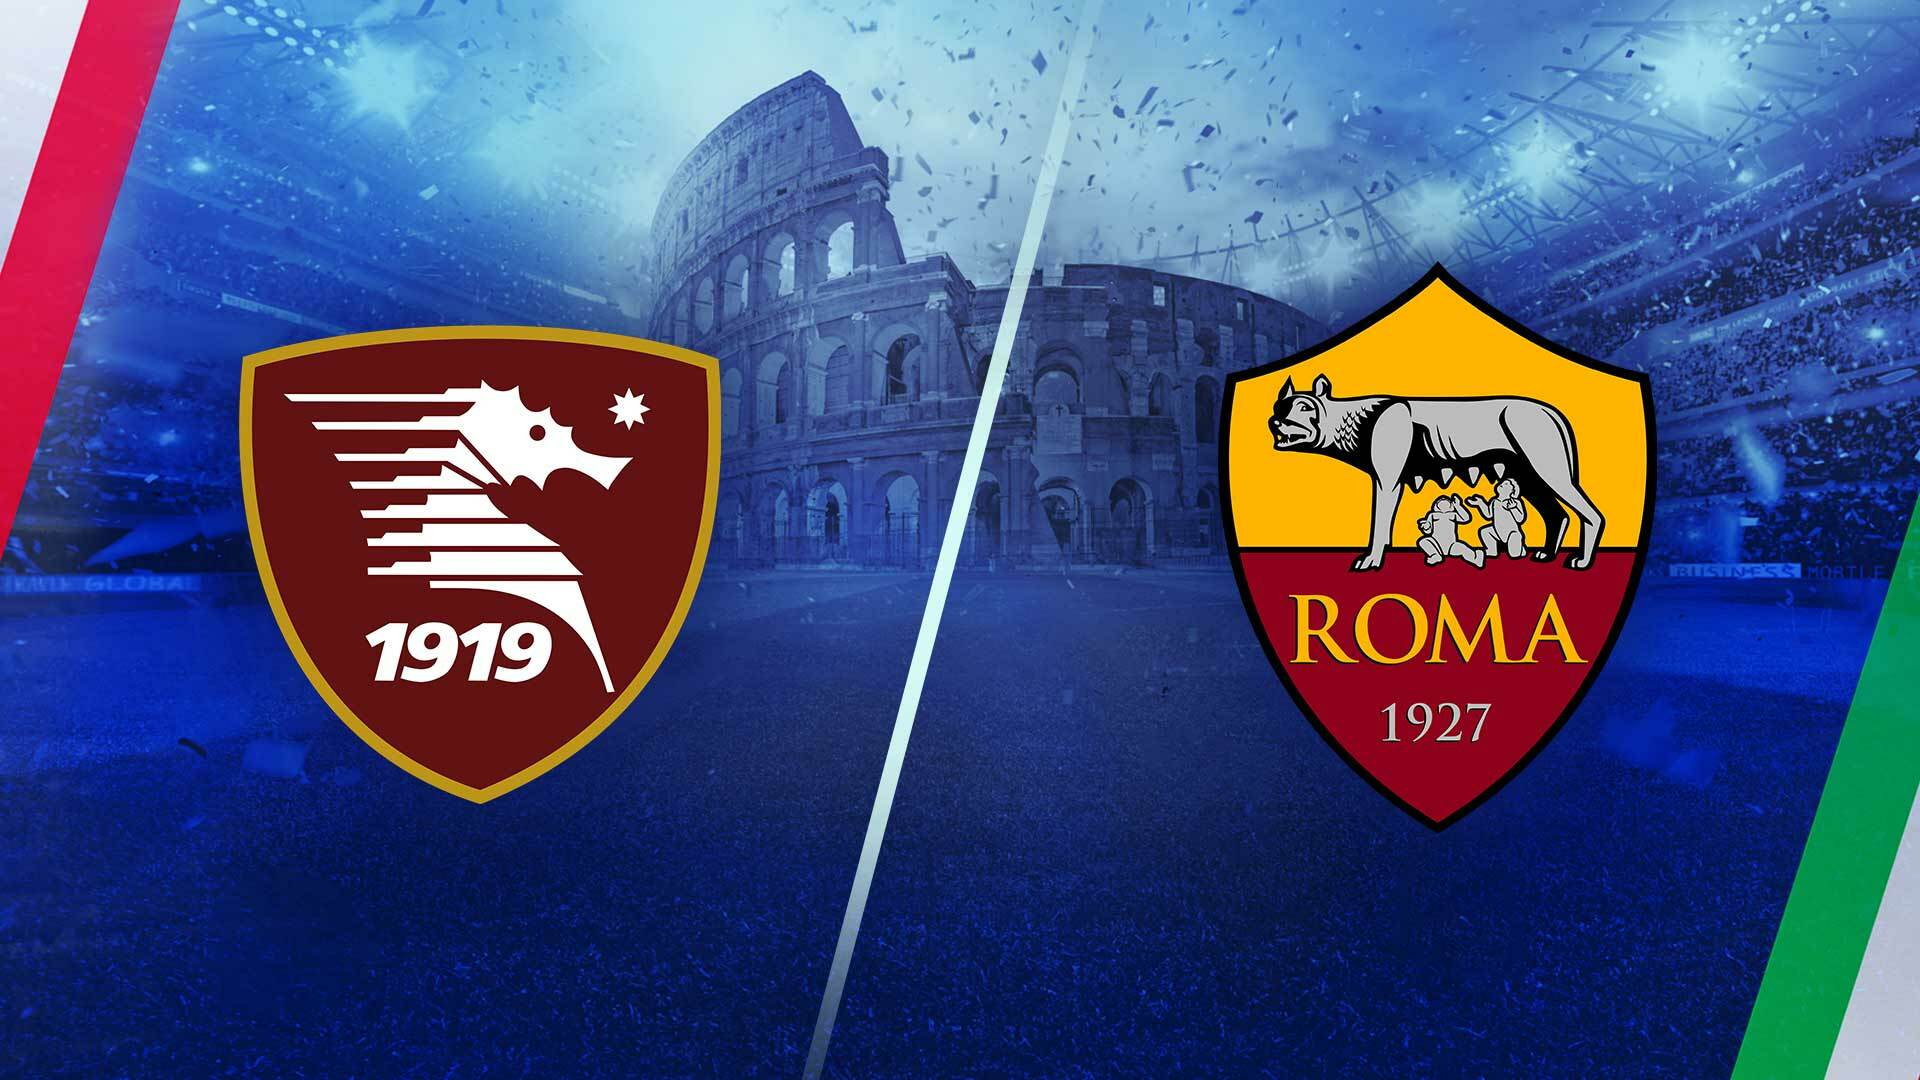 Salernitana vs roma